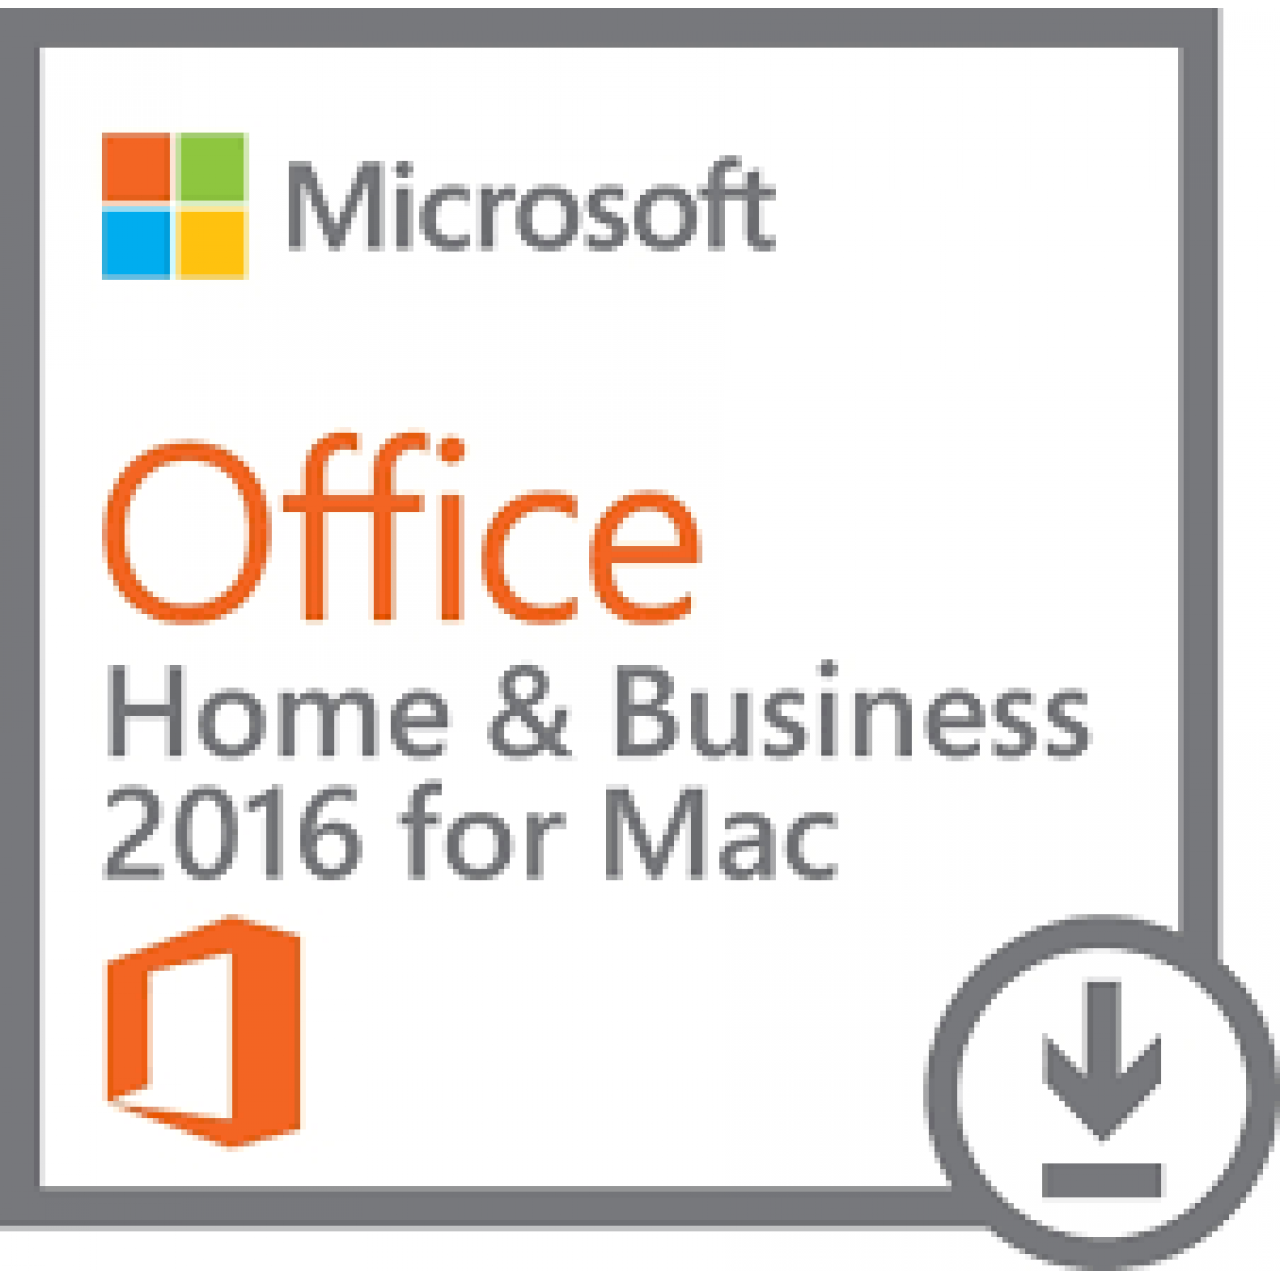 Office Home&Business 2016 Lisans Anahtarı - MAC İÇİN KEY